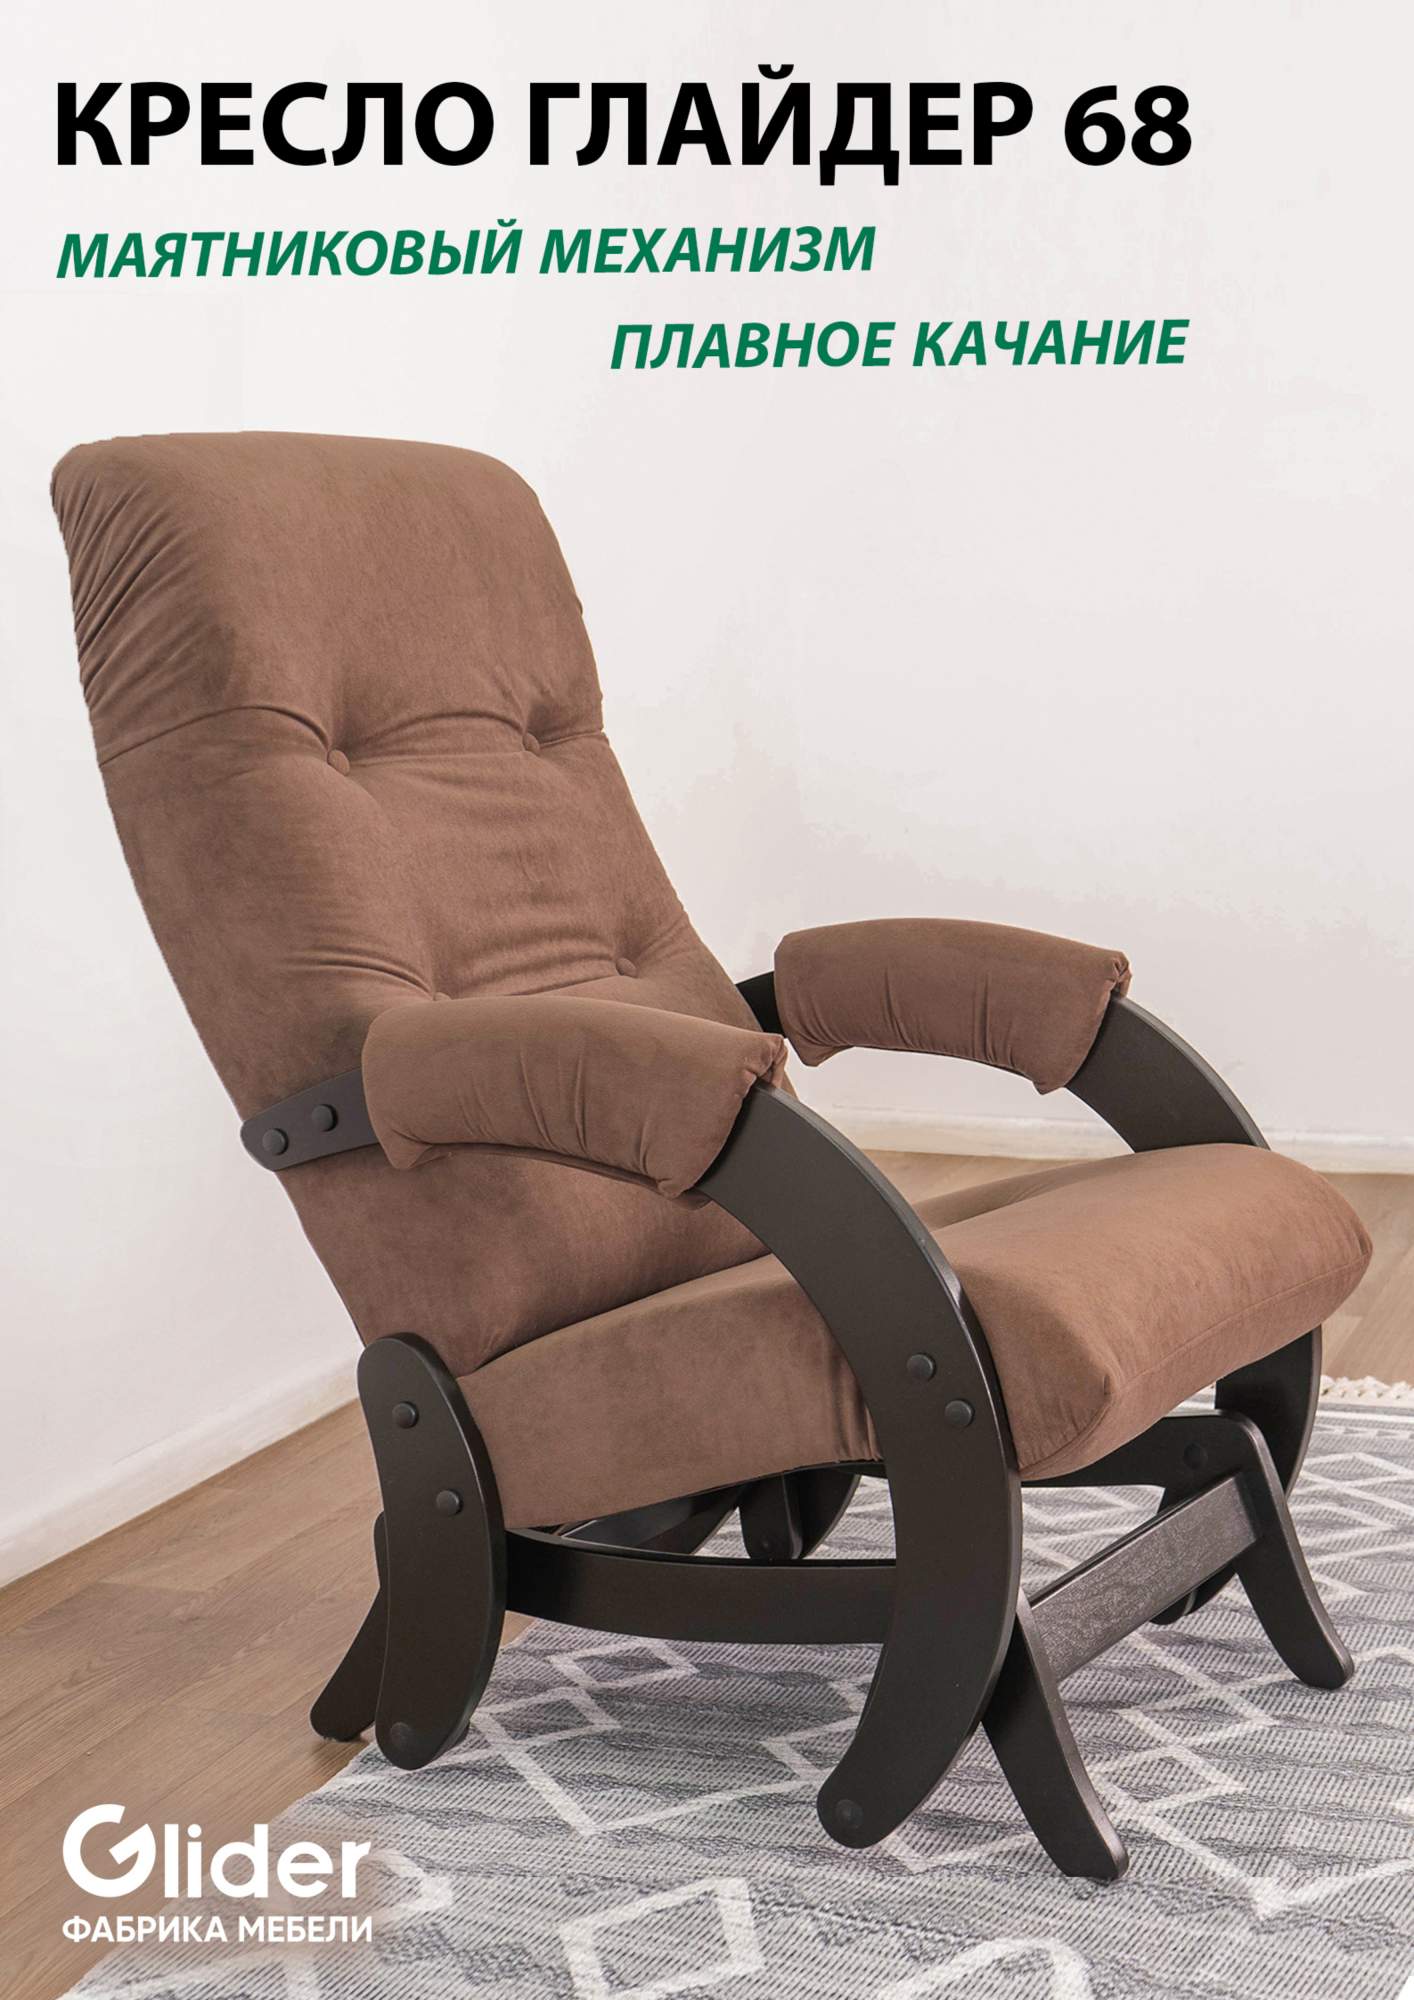 Кресло-качалка с маятниковым механизмом Glider 68 - купить в Москве, цены на Мегамаркет | 600012355671